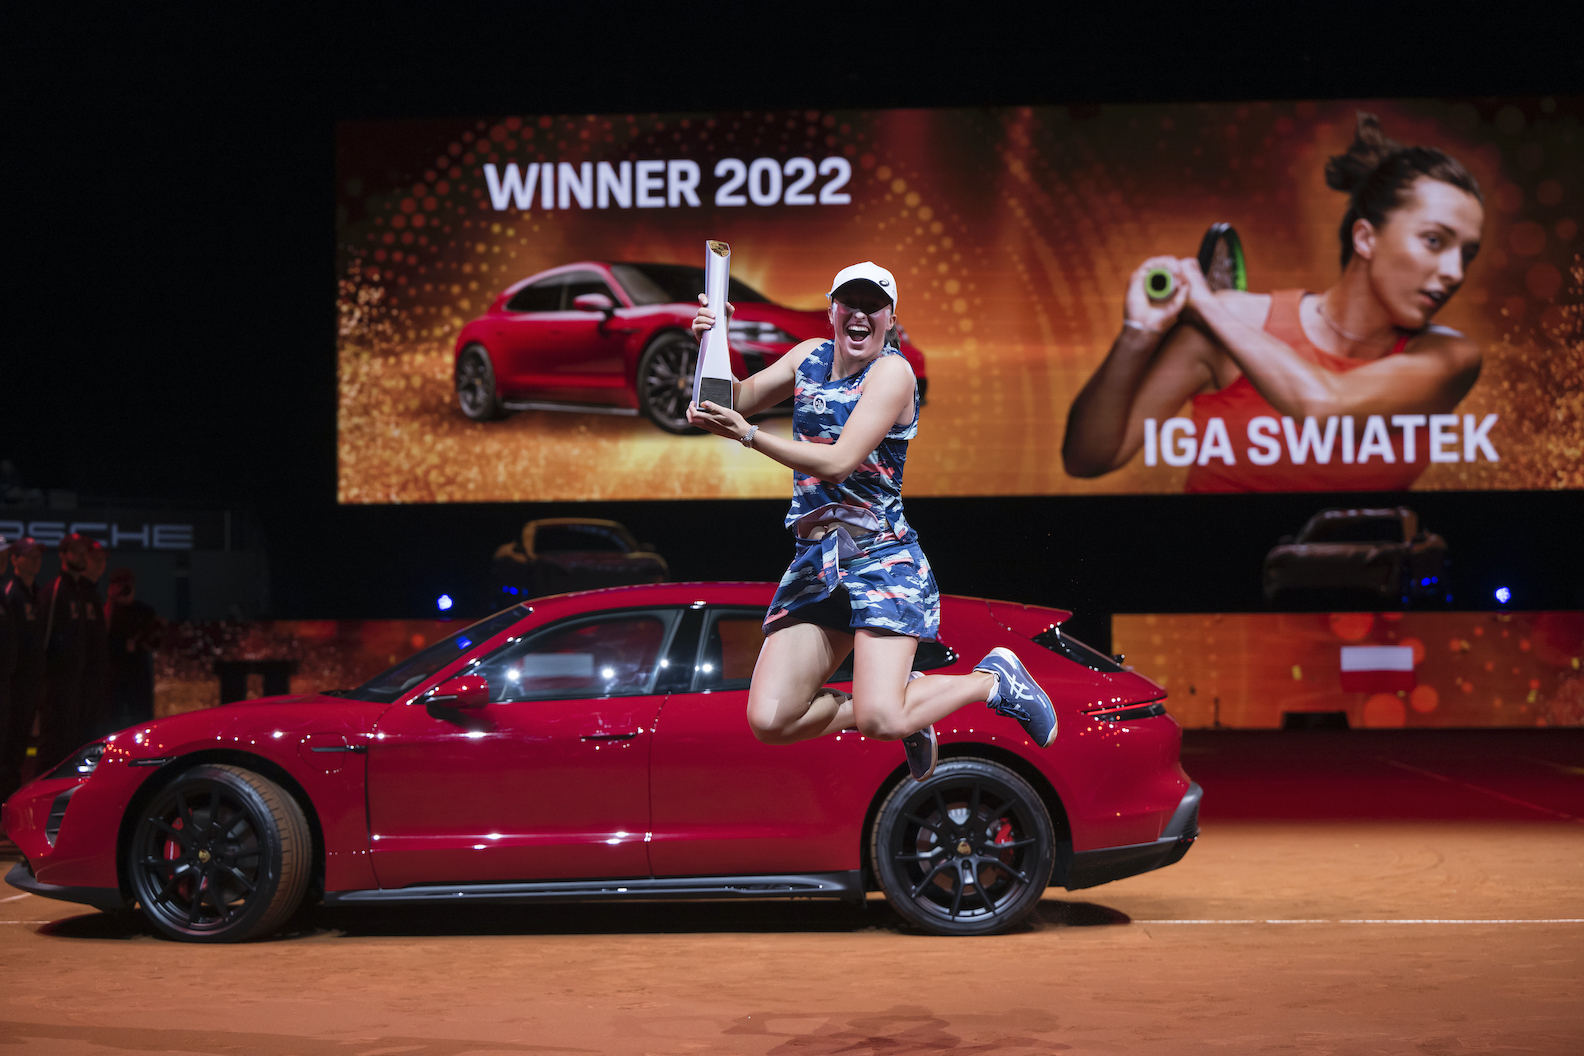 45. Porsche Tennis Grand Prix: Iga Swiatek gewinnt bei ihrer Premiere in Stuttgart